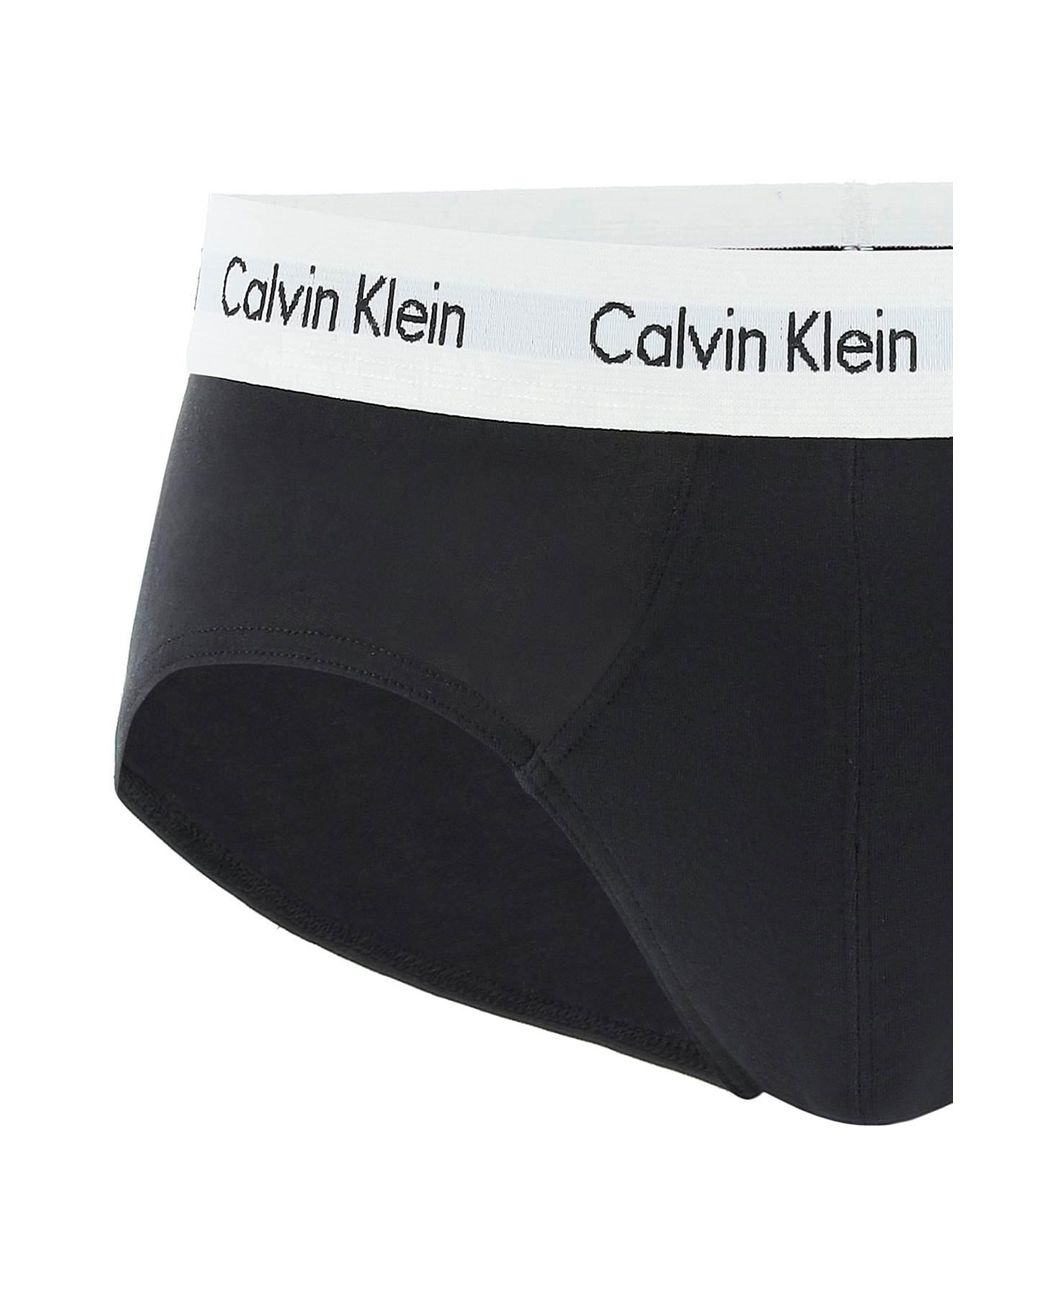 Calvin Klein Cotton Tri-pack Underwear Briefs for Men - Save 62% | Lyst